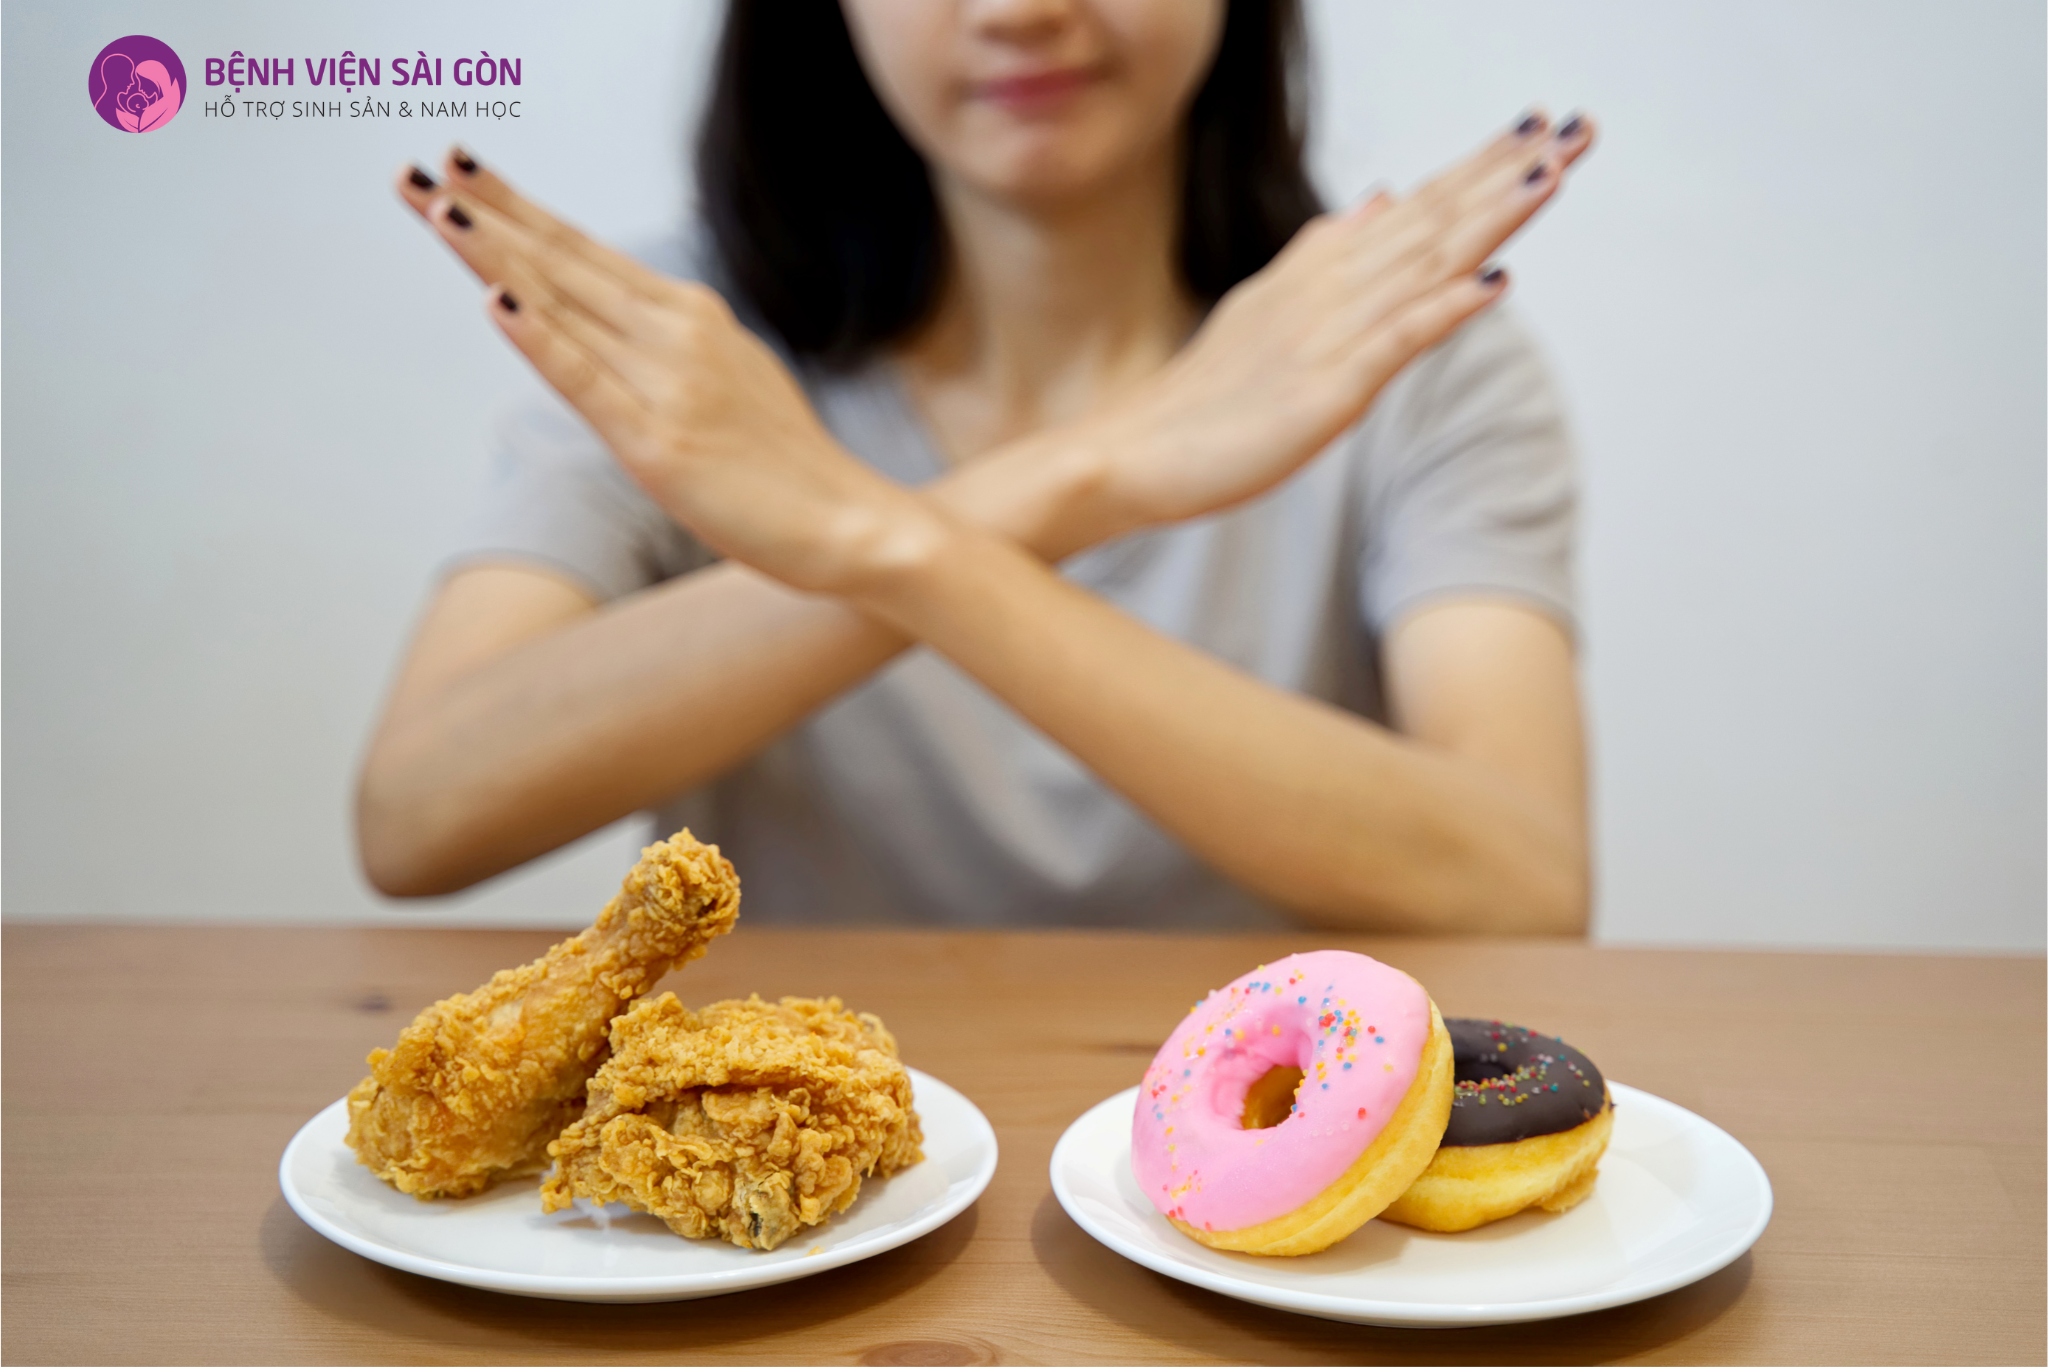 Hạn chế các thực phẩm dễ gây béo phì